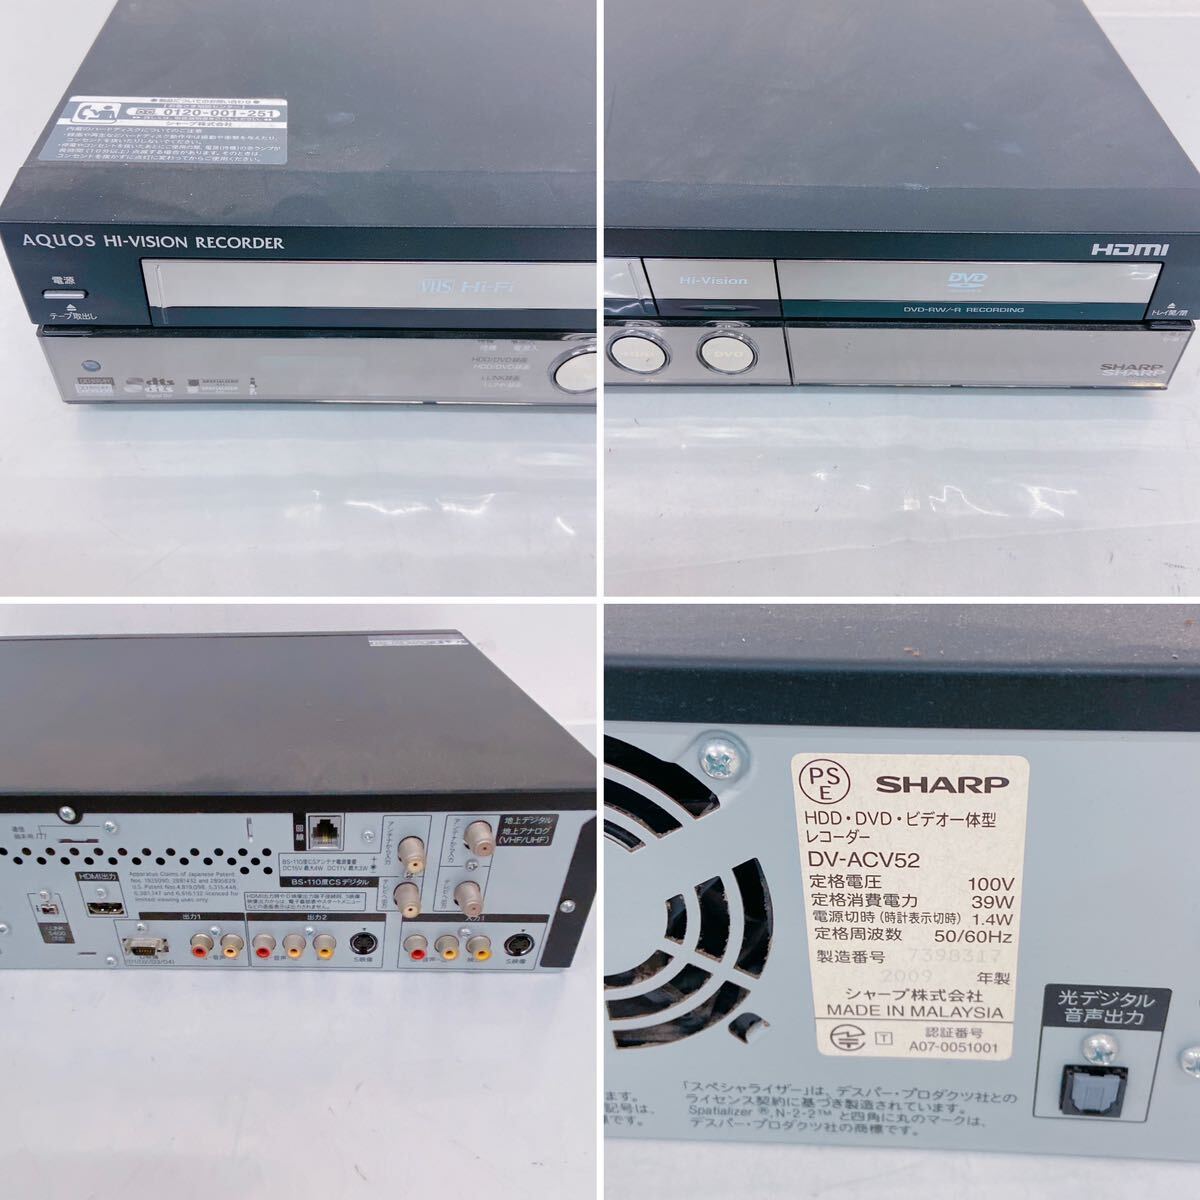 5C018 SHARP シャープ AQUOS アクオス DVDレコーダー HI-VISION RECORDER ハイビジョンレコーダー DV-ACV52 _画像7